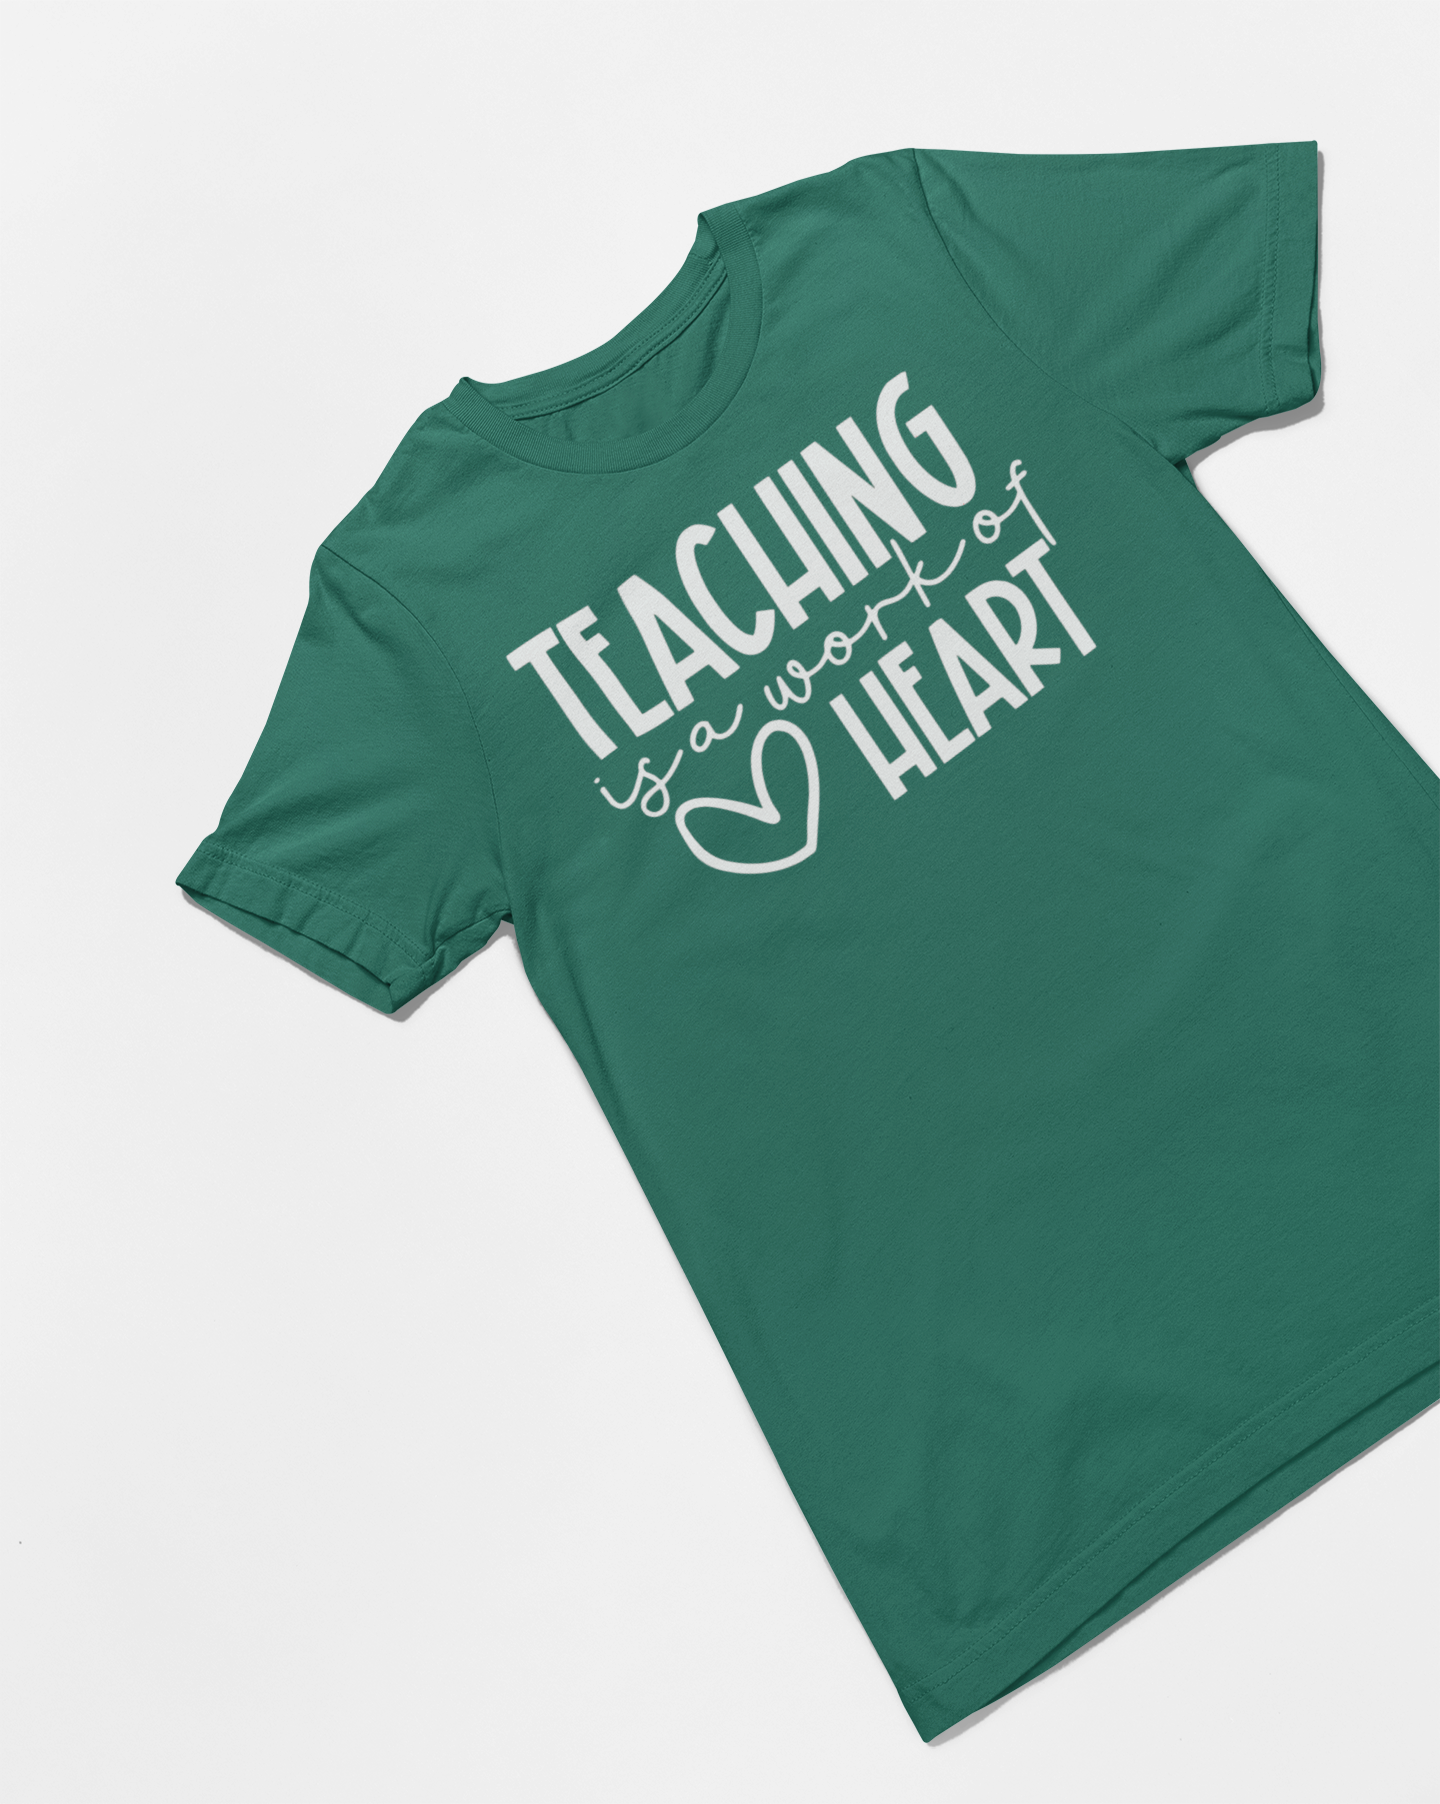 Teaching Is A Work of Heart Teacher T-shirt